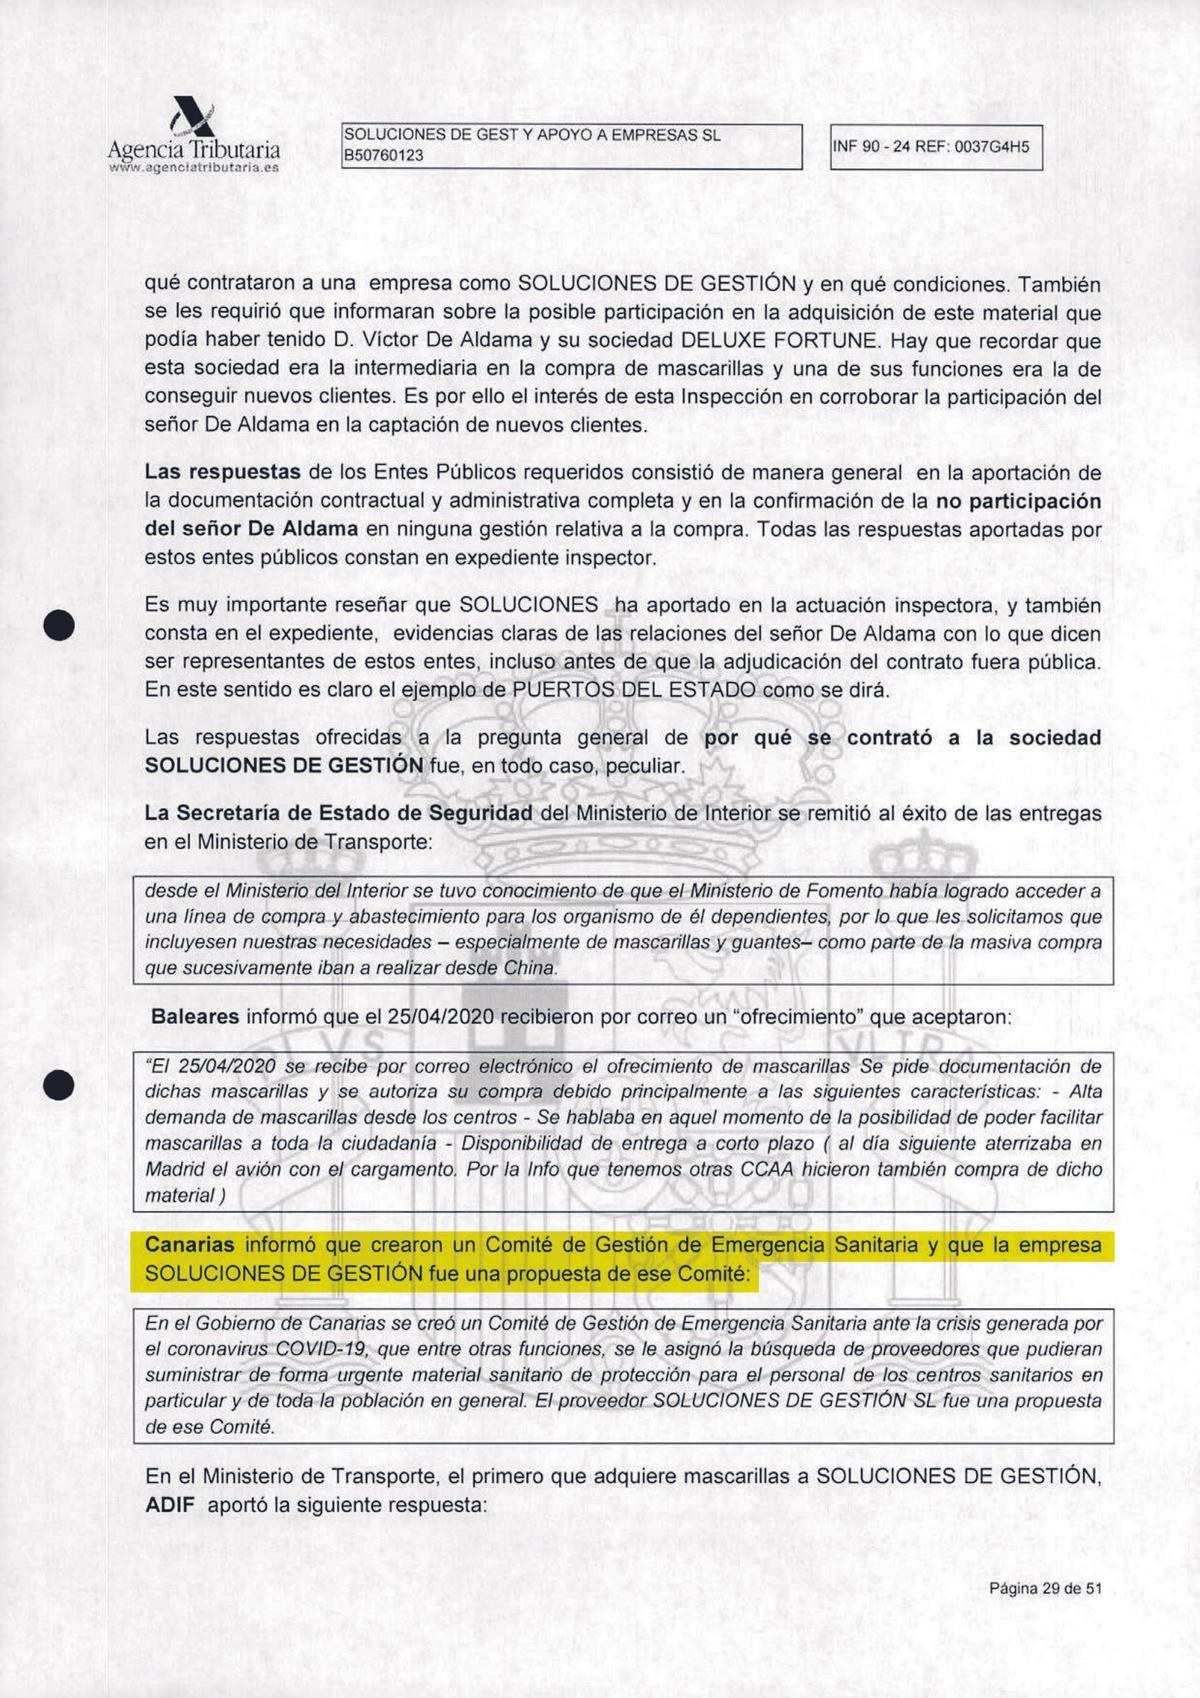 Informe de la Agencia Tributaria incluido en el sumario del caso Koldo donde aparece que Canarias informó de que el origen de los contratos estaba en el comité que presidía Ángel Víctor Torres.